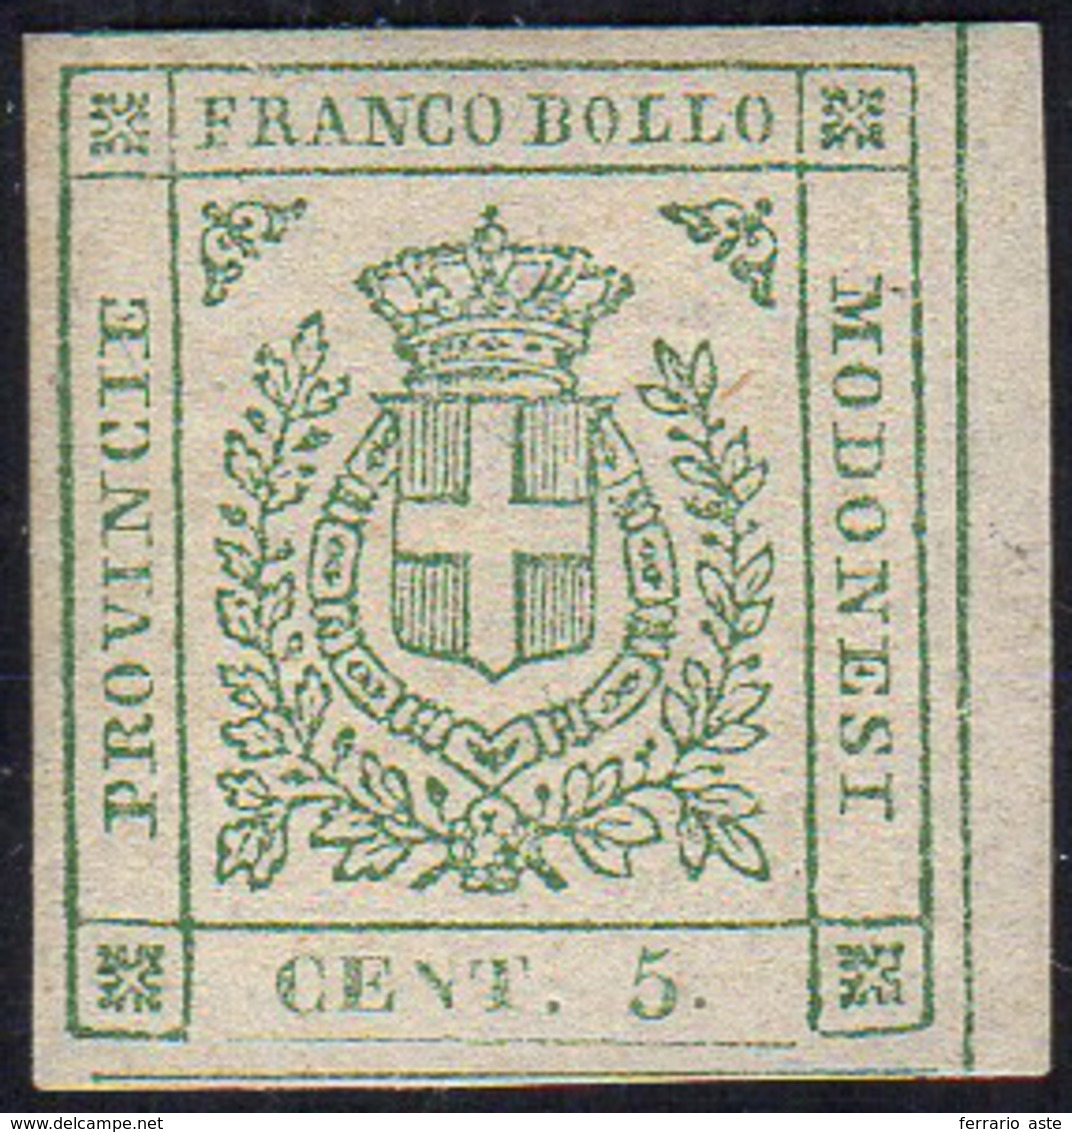 1859 - 5 Cent. Verde (12), Bordo Di Foglio, Gomma Originale, Perfetto. Bello. G.Oliva.... - Modena